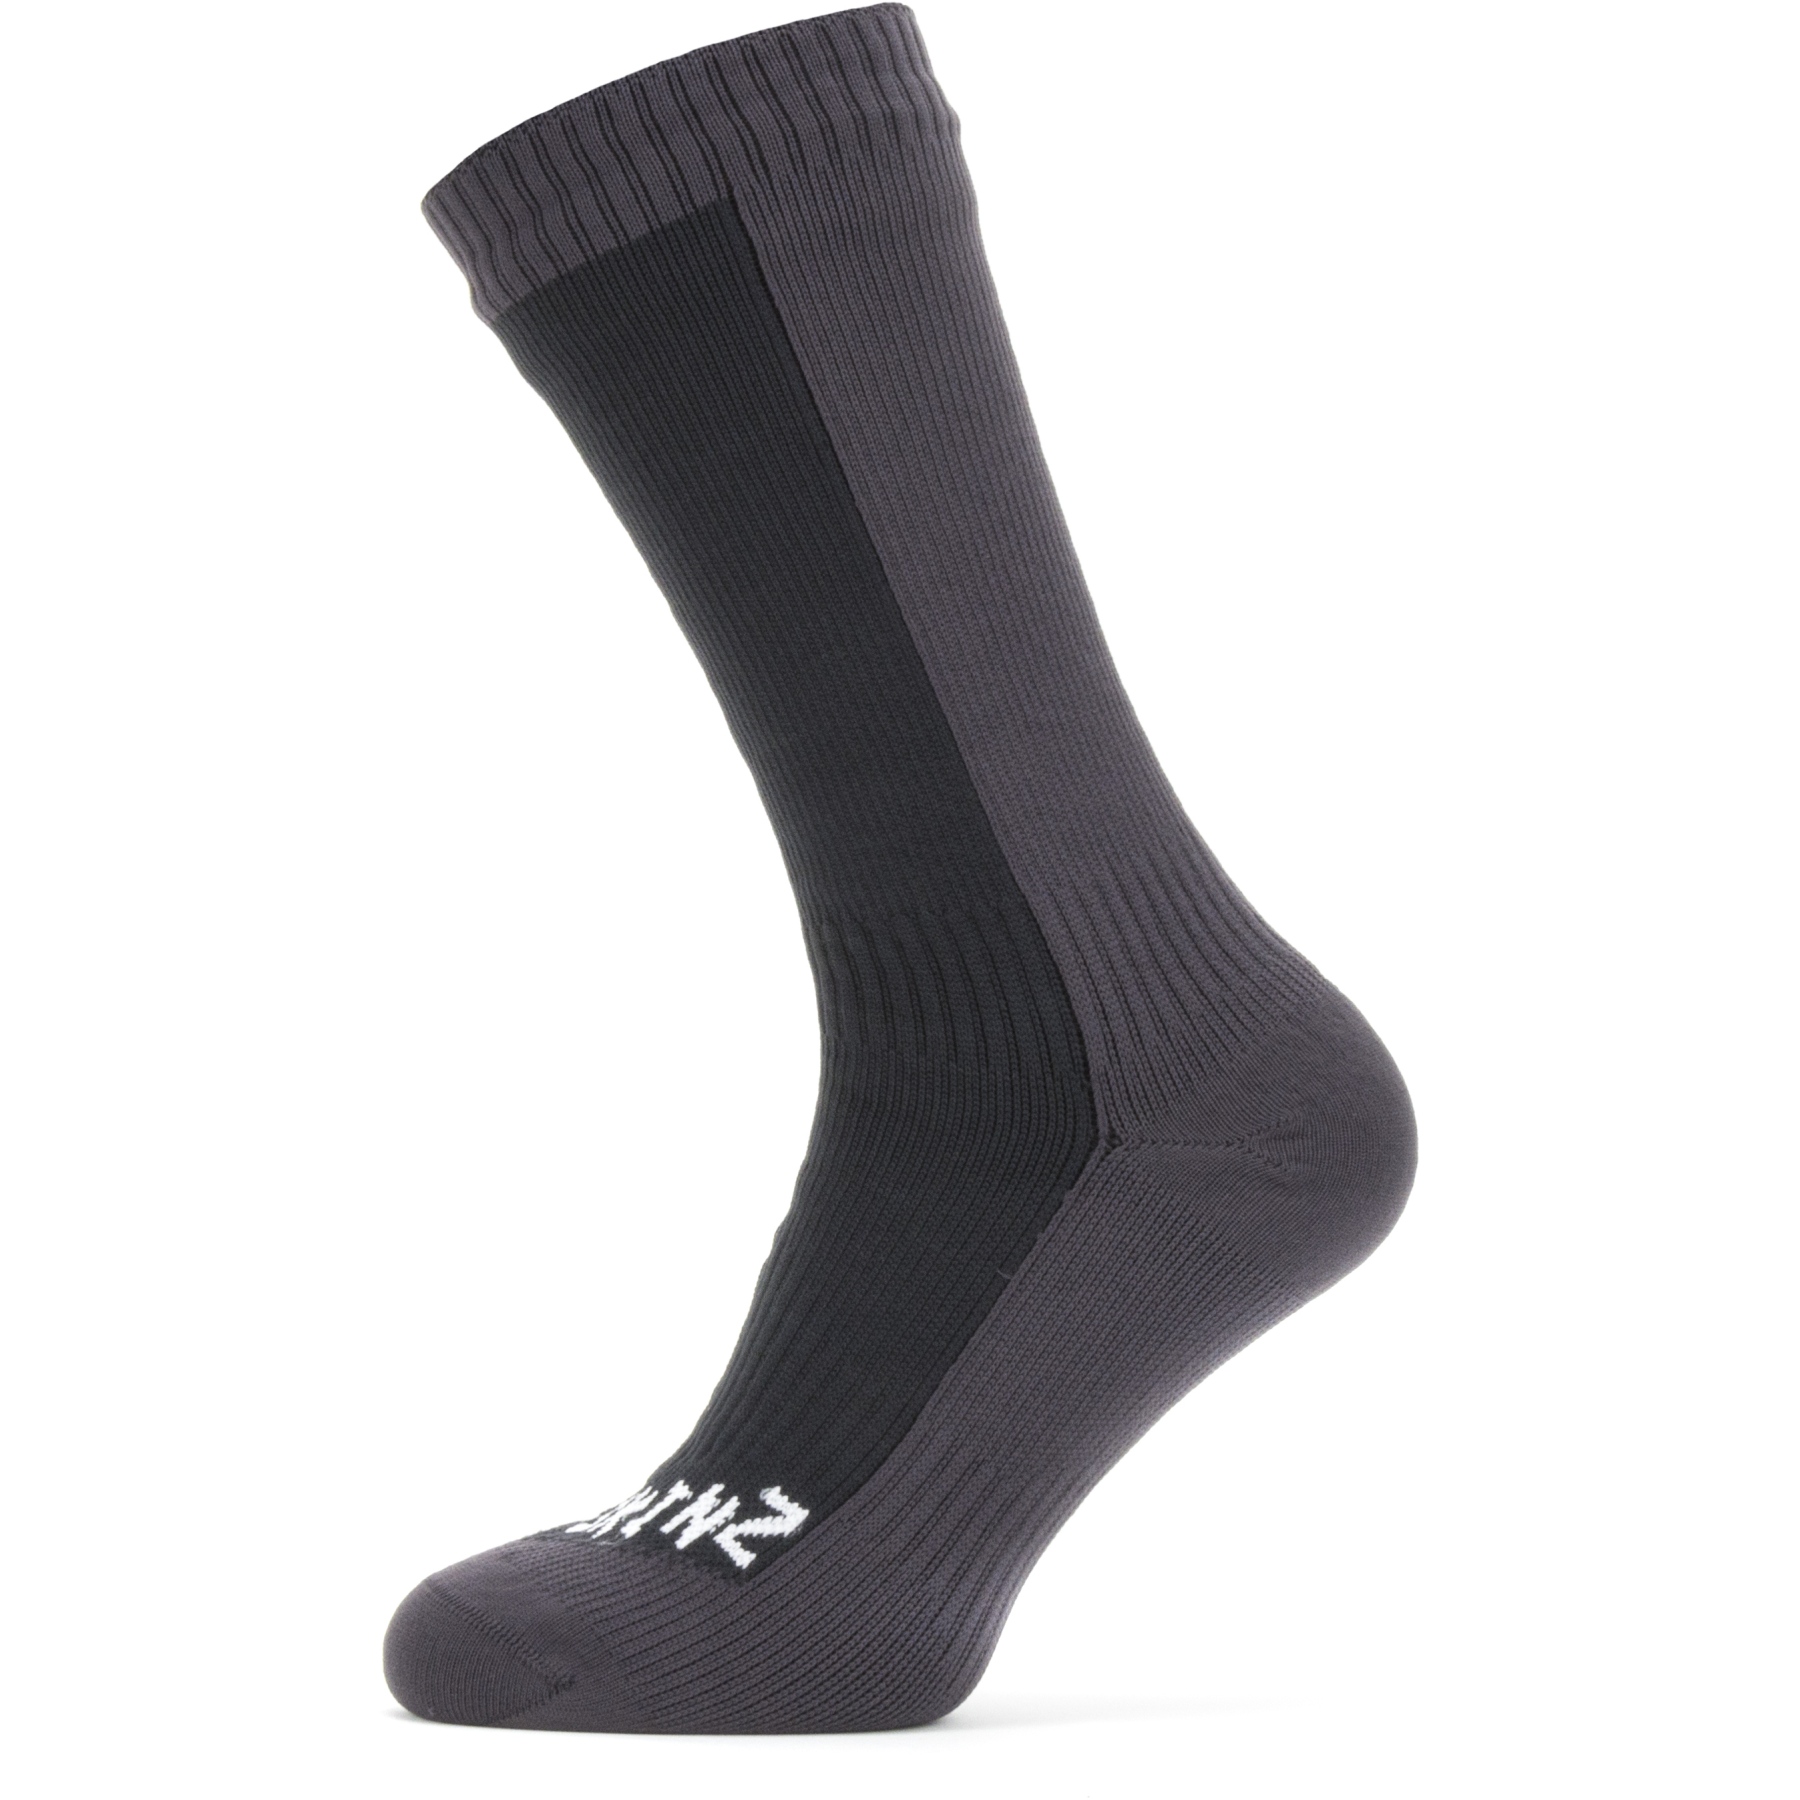 Productfoto van SealSkinz Starston Waterdichte Halflange Sokken Voor Koud Weer - Zwart/Grijs